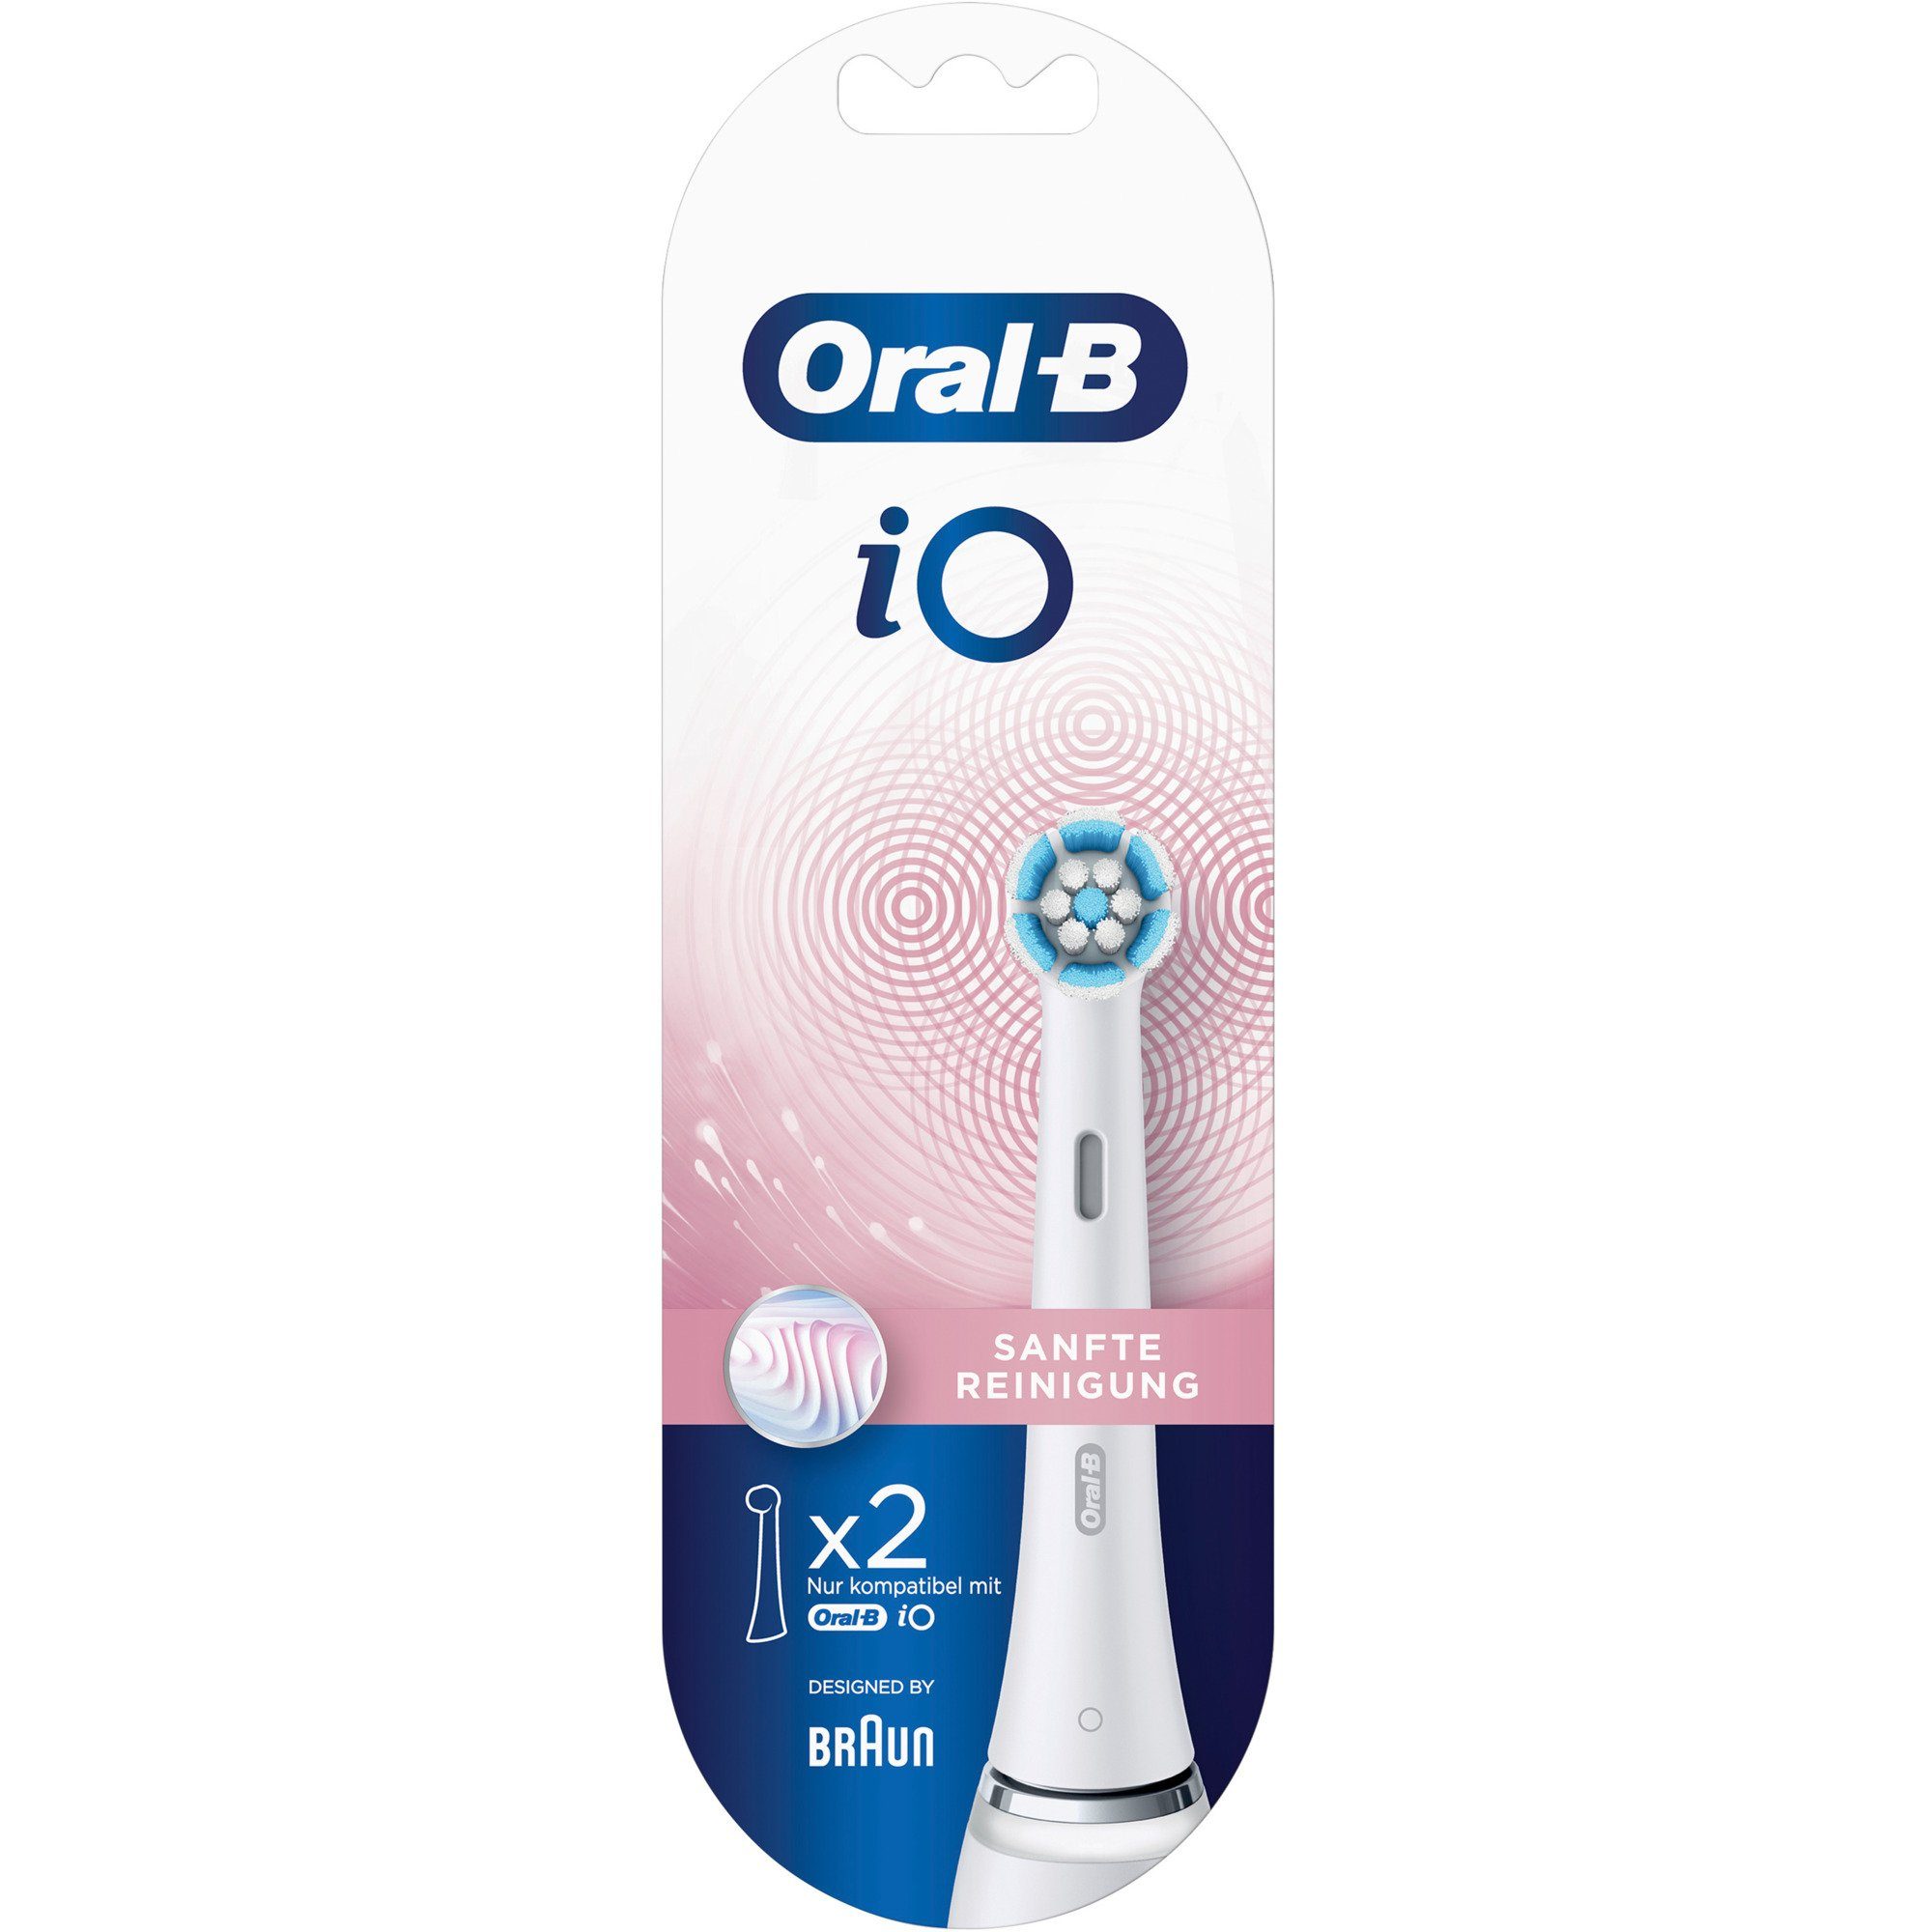 Oral-B Reinigung iO Braun Elektrische 2er Sanfte Zahnbürste Oral-B